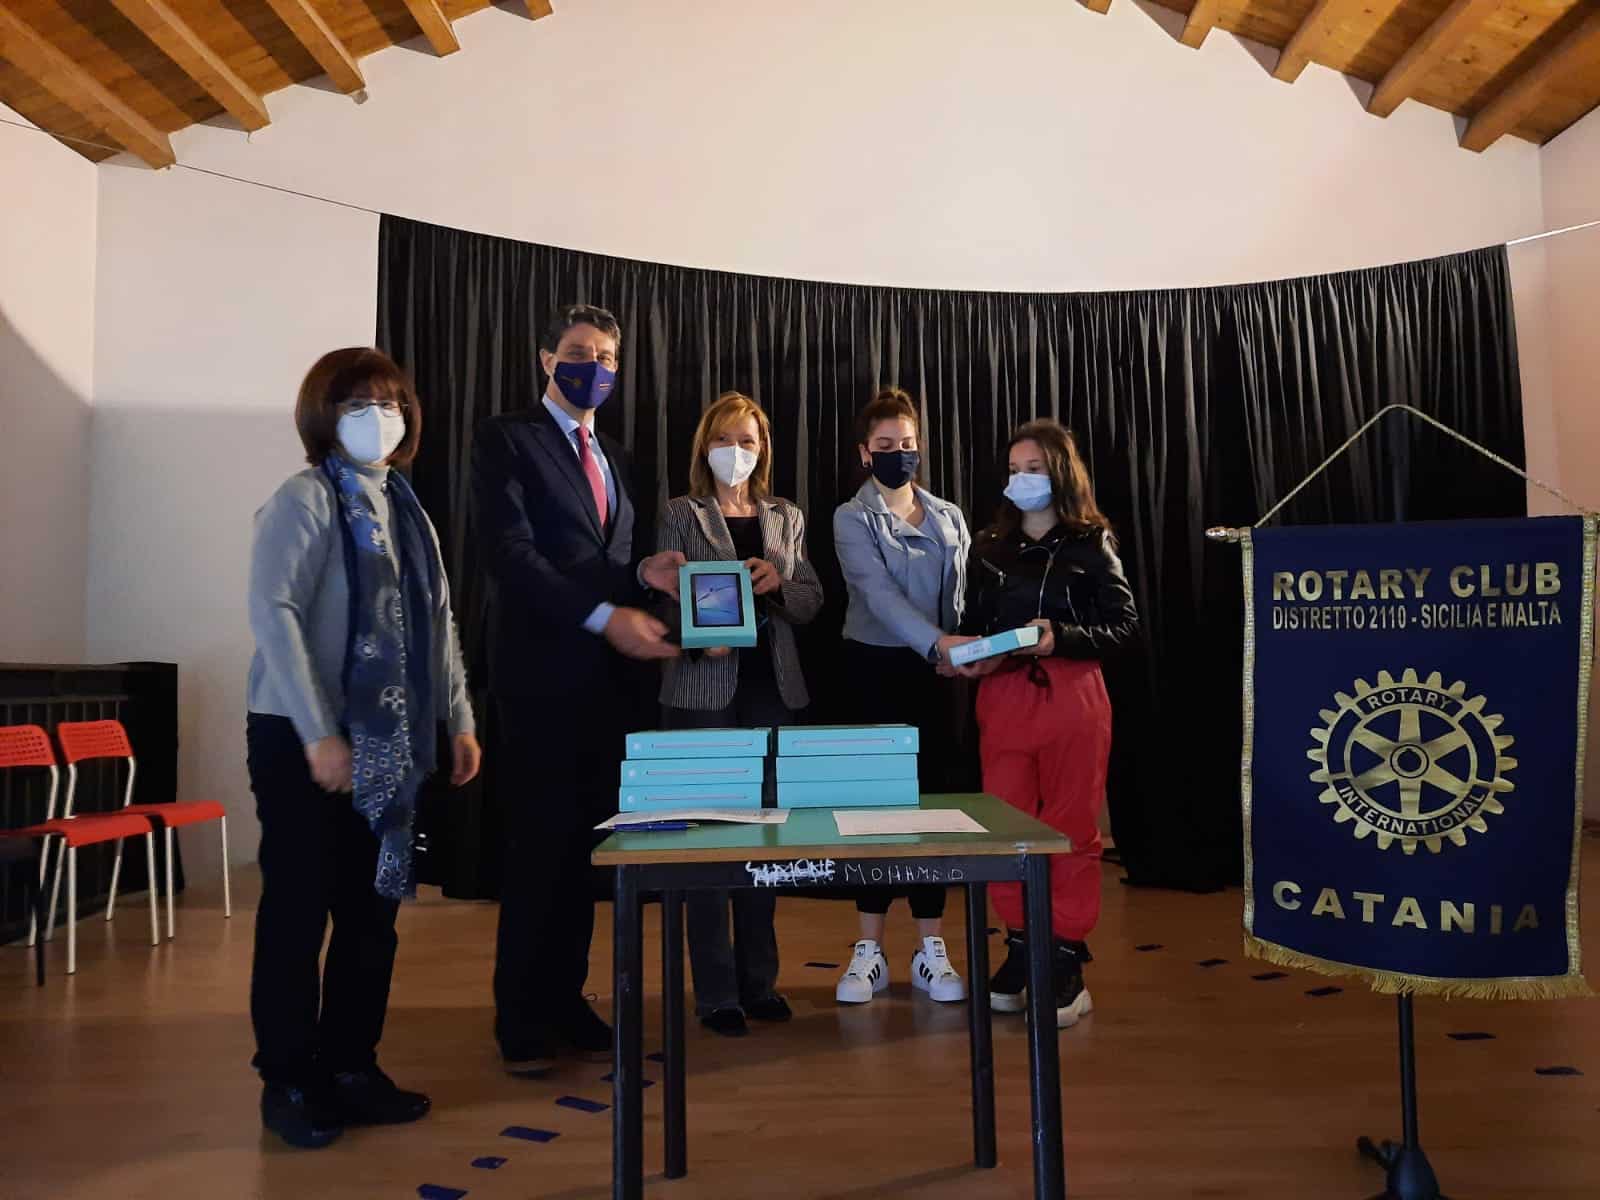 Il Rotary Club vicino all’I.C. “Fontanarossa” di Catania, donati tablet per la didattica